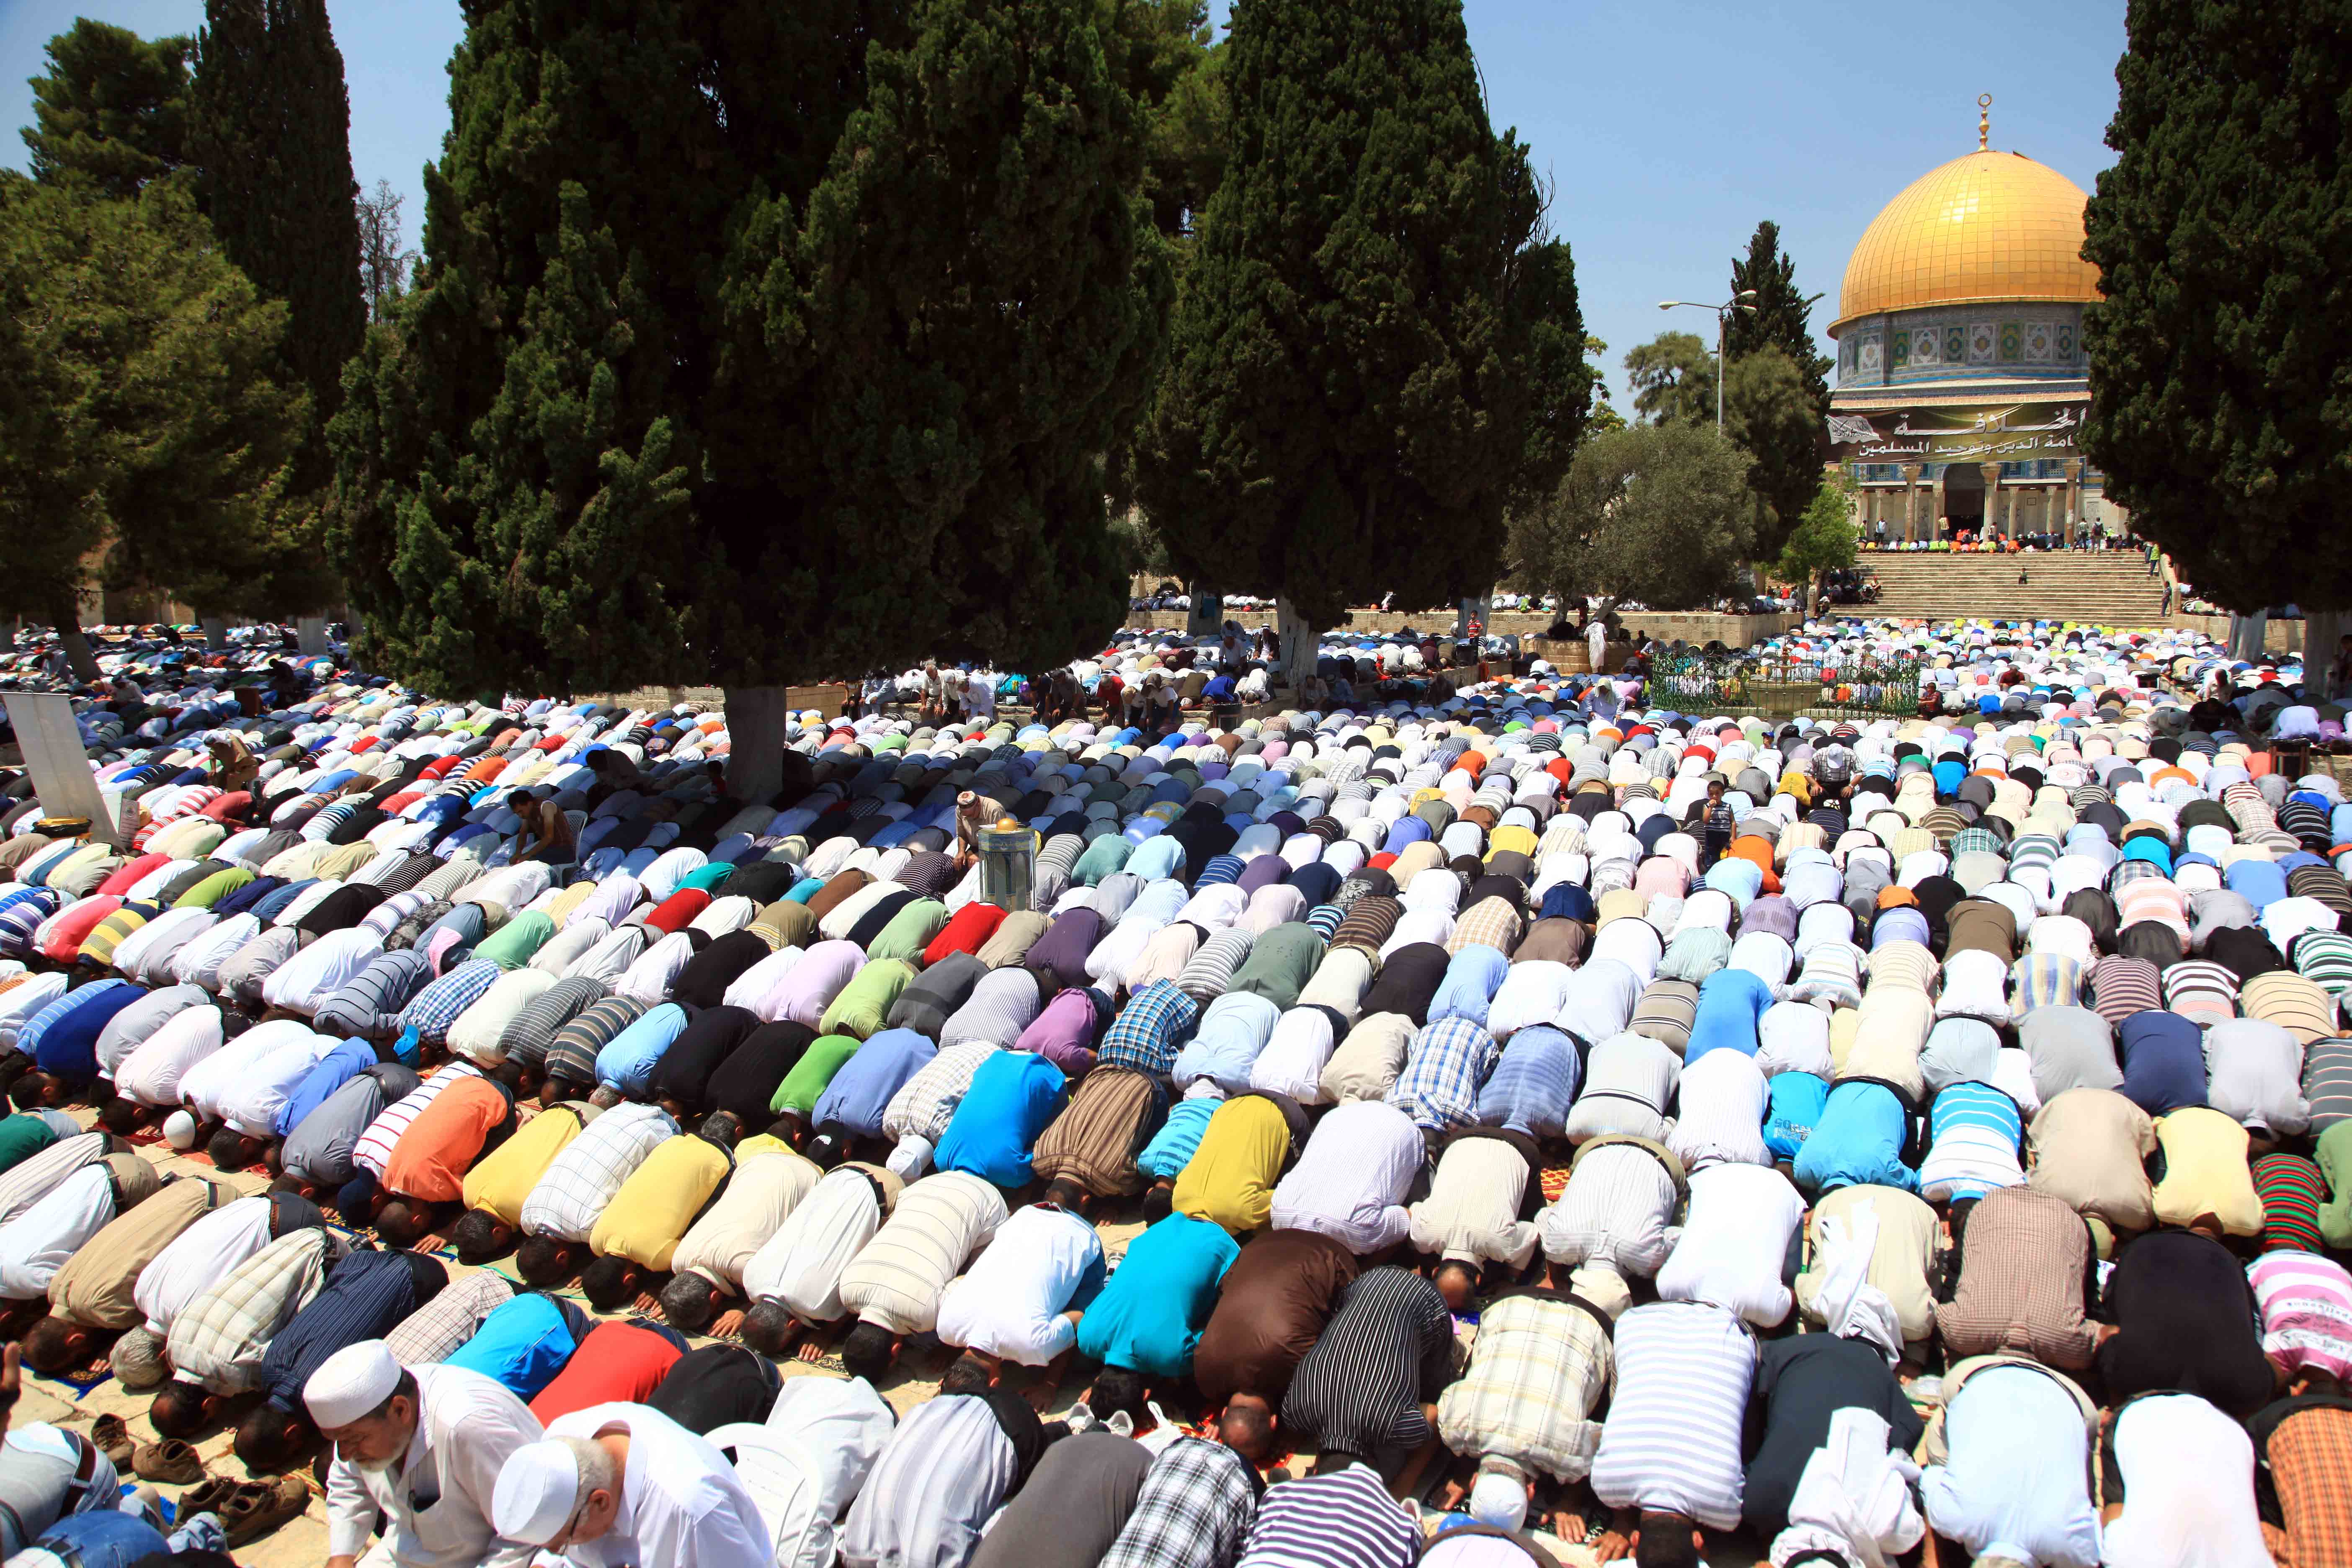 المئات يصلون في المسجد الأقصى